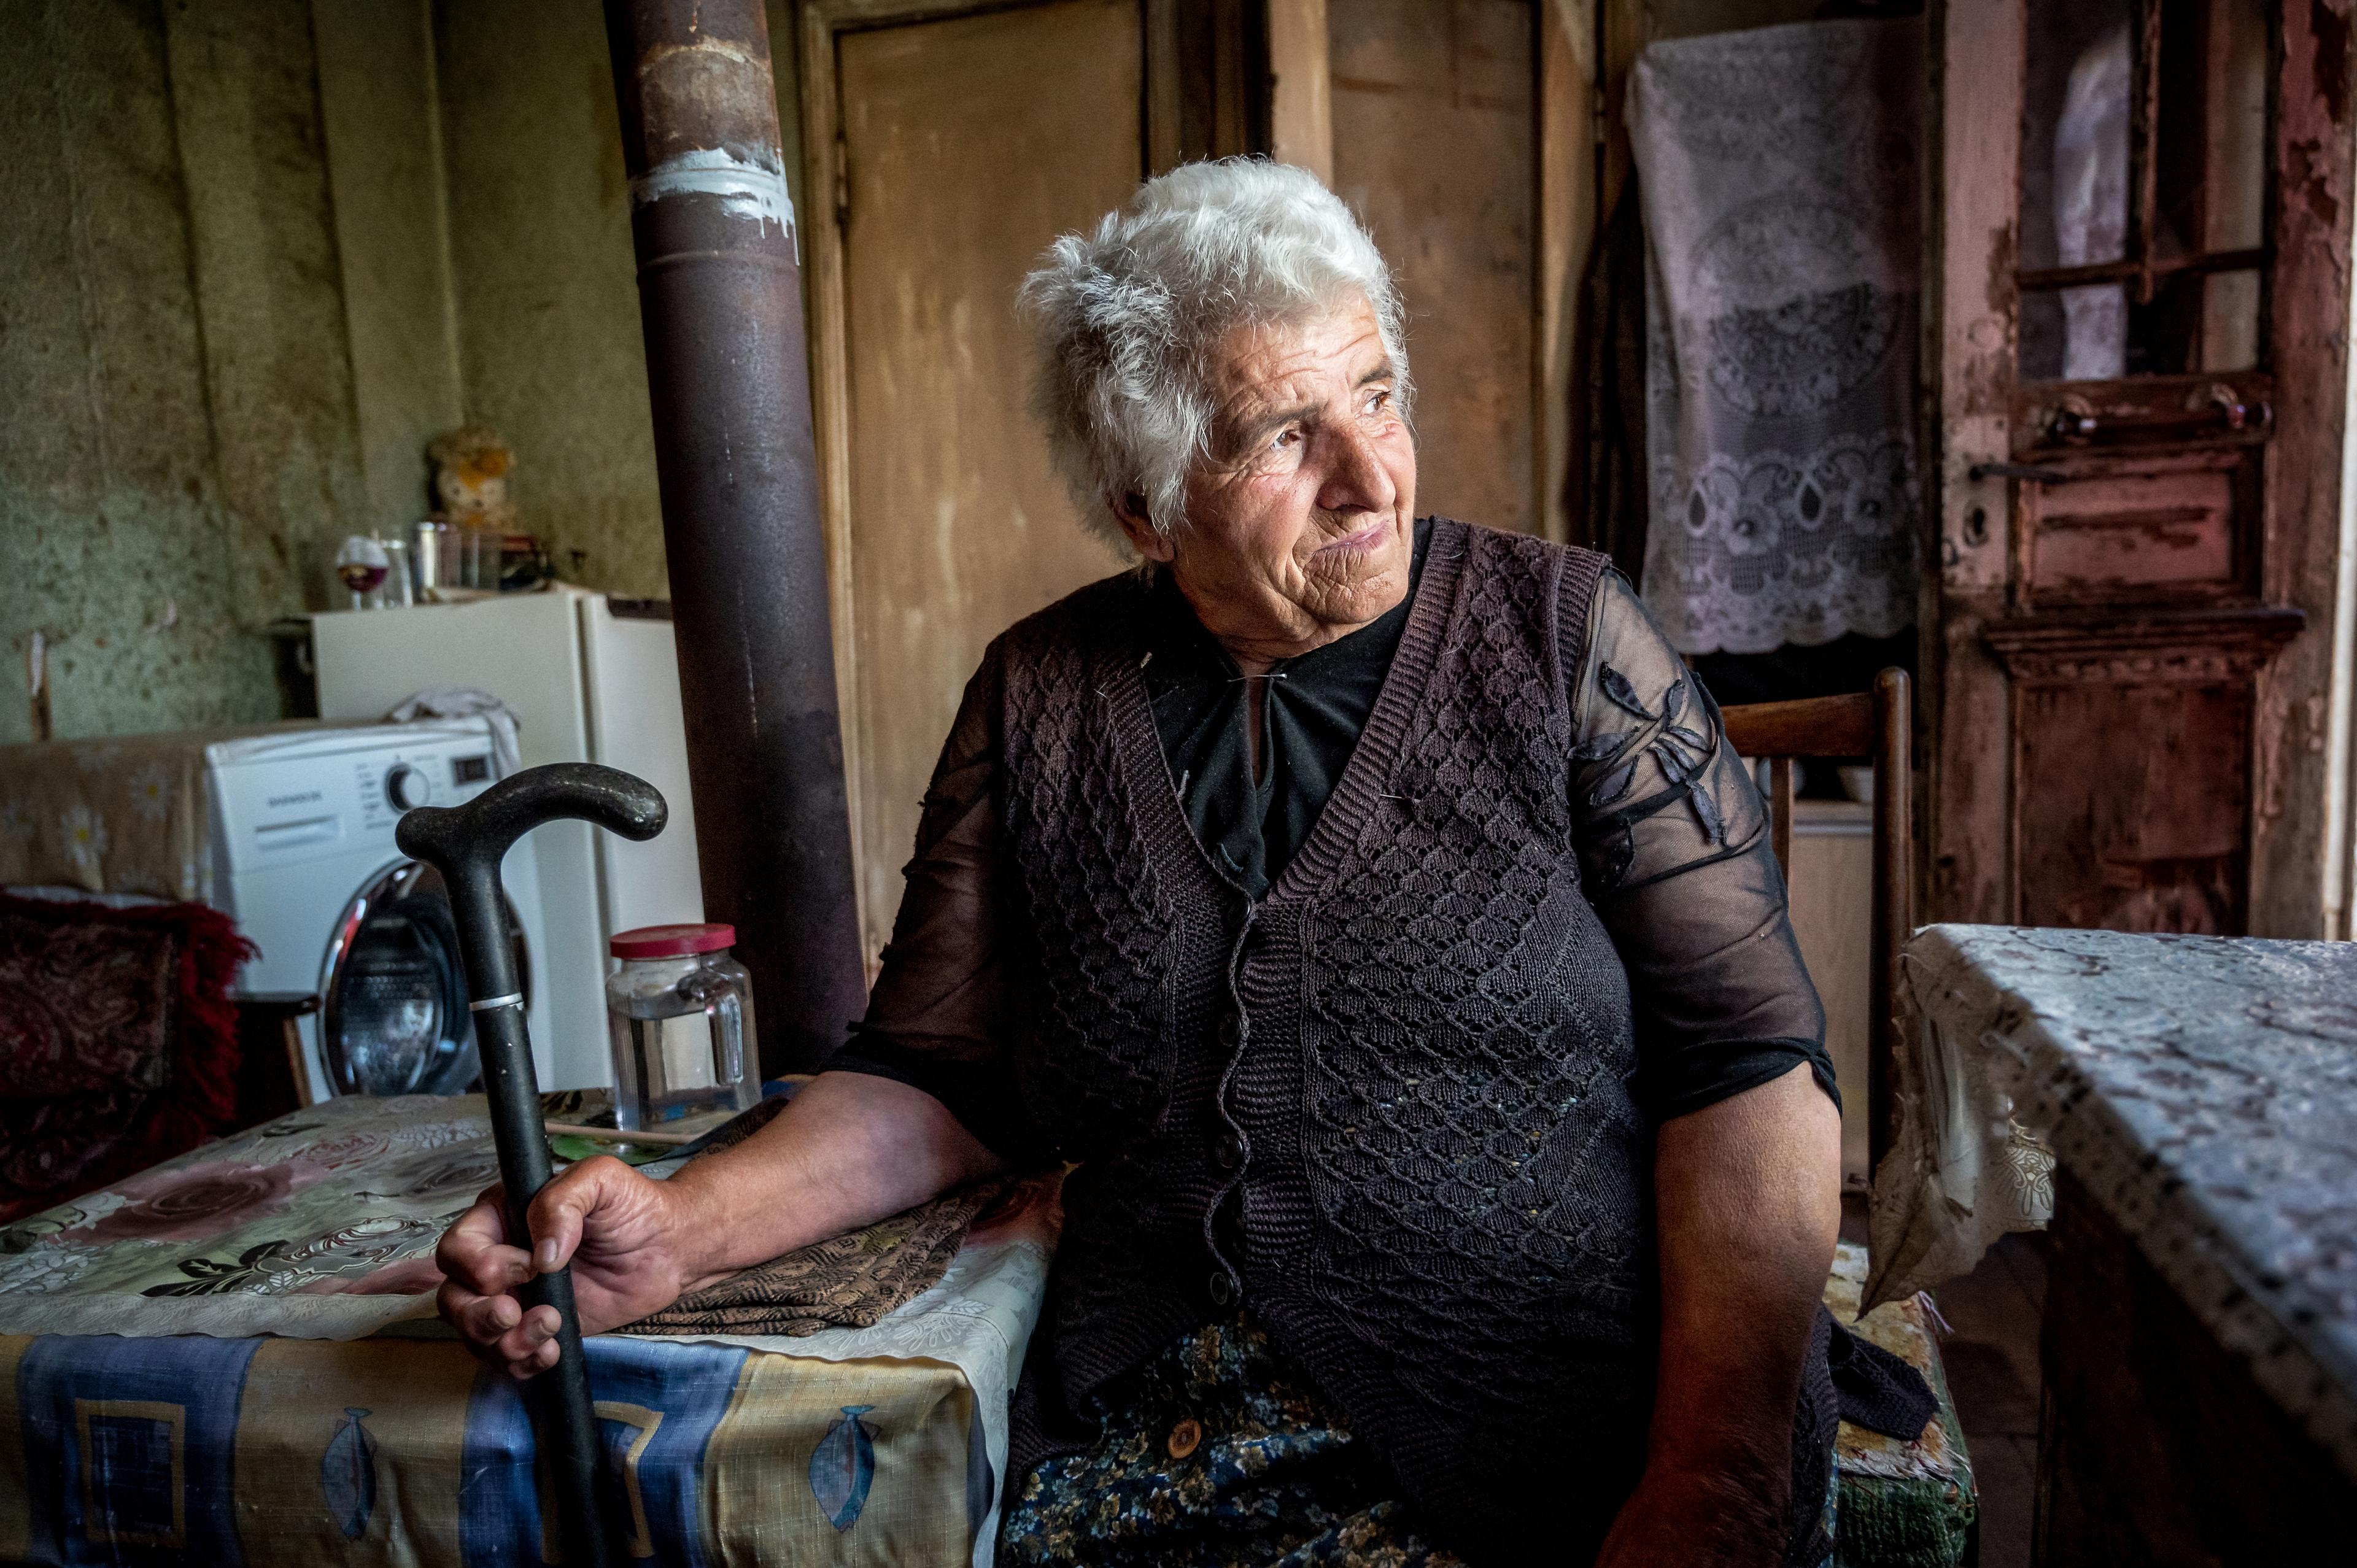 Una donna anziana siede a un tavolo e guarda pensierosa fuori dalla finestra. Nella mano destra tiene un bastone da passeggio.